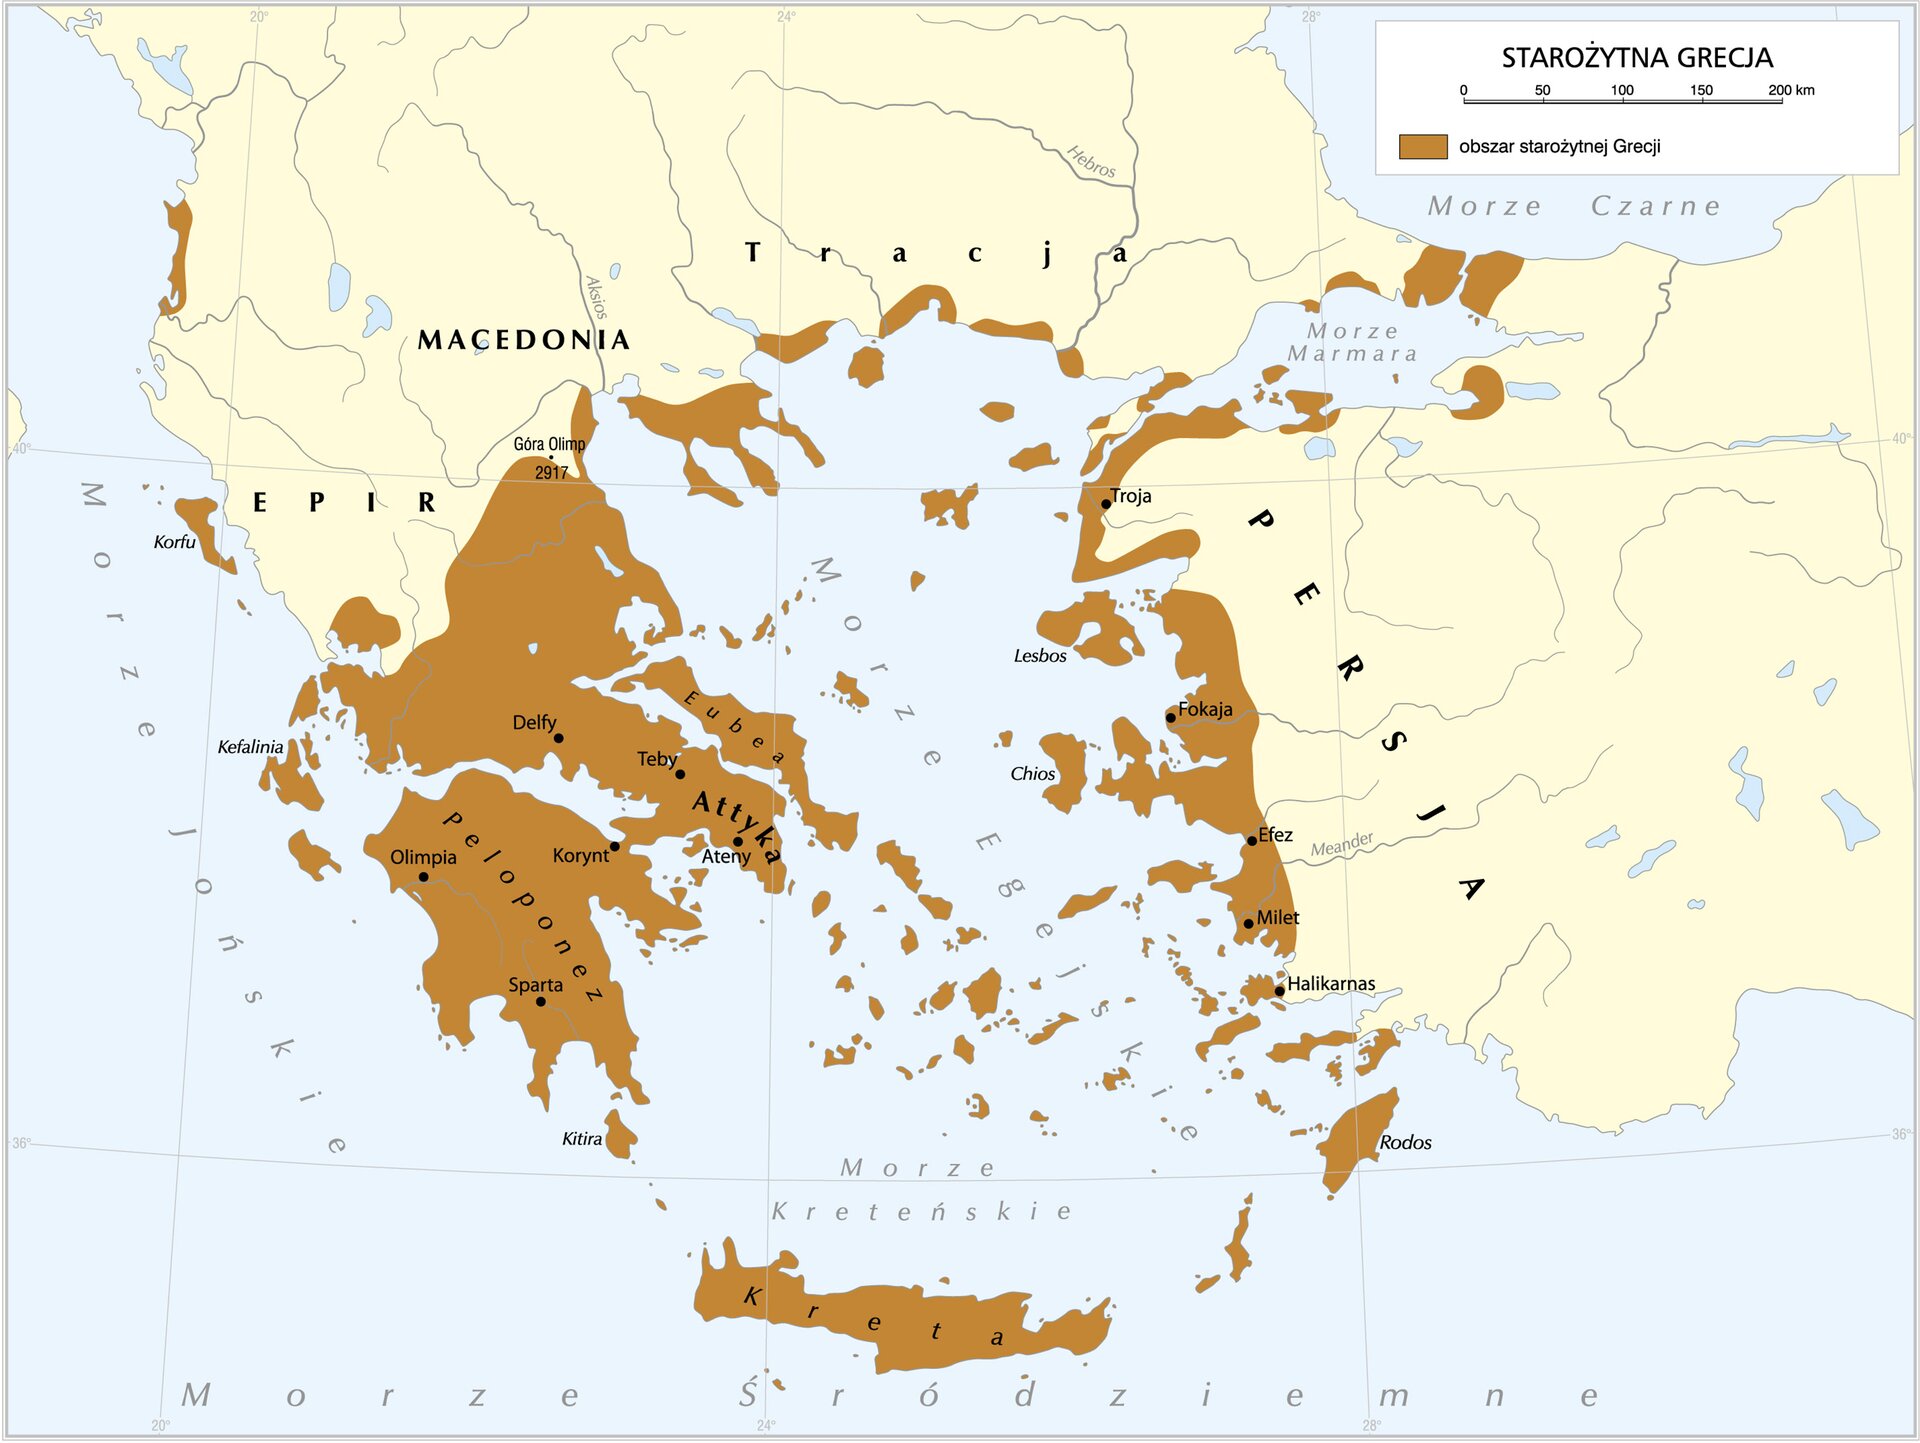 Grecja to kraj położony w południowej części Półwyspu Bałkańskiego Grecja to kraj położony w południowej części Półwyspu Bałkańskiego Źródło: Krystian Chariza i zespół.